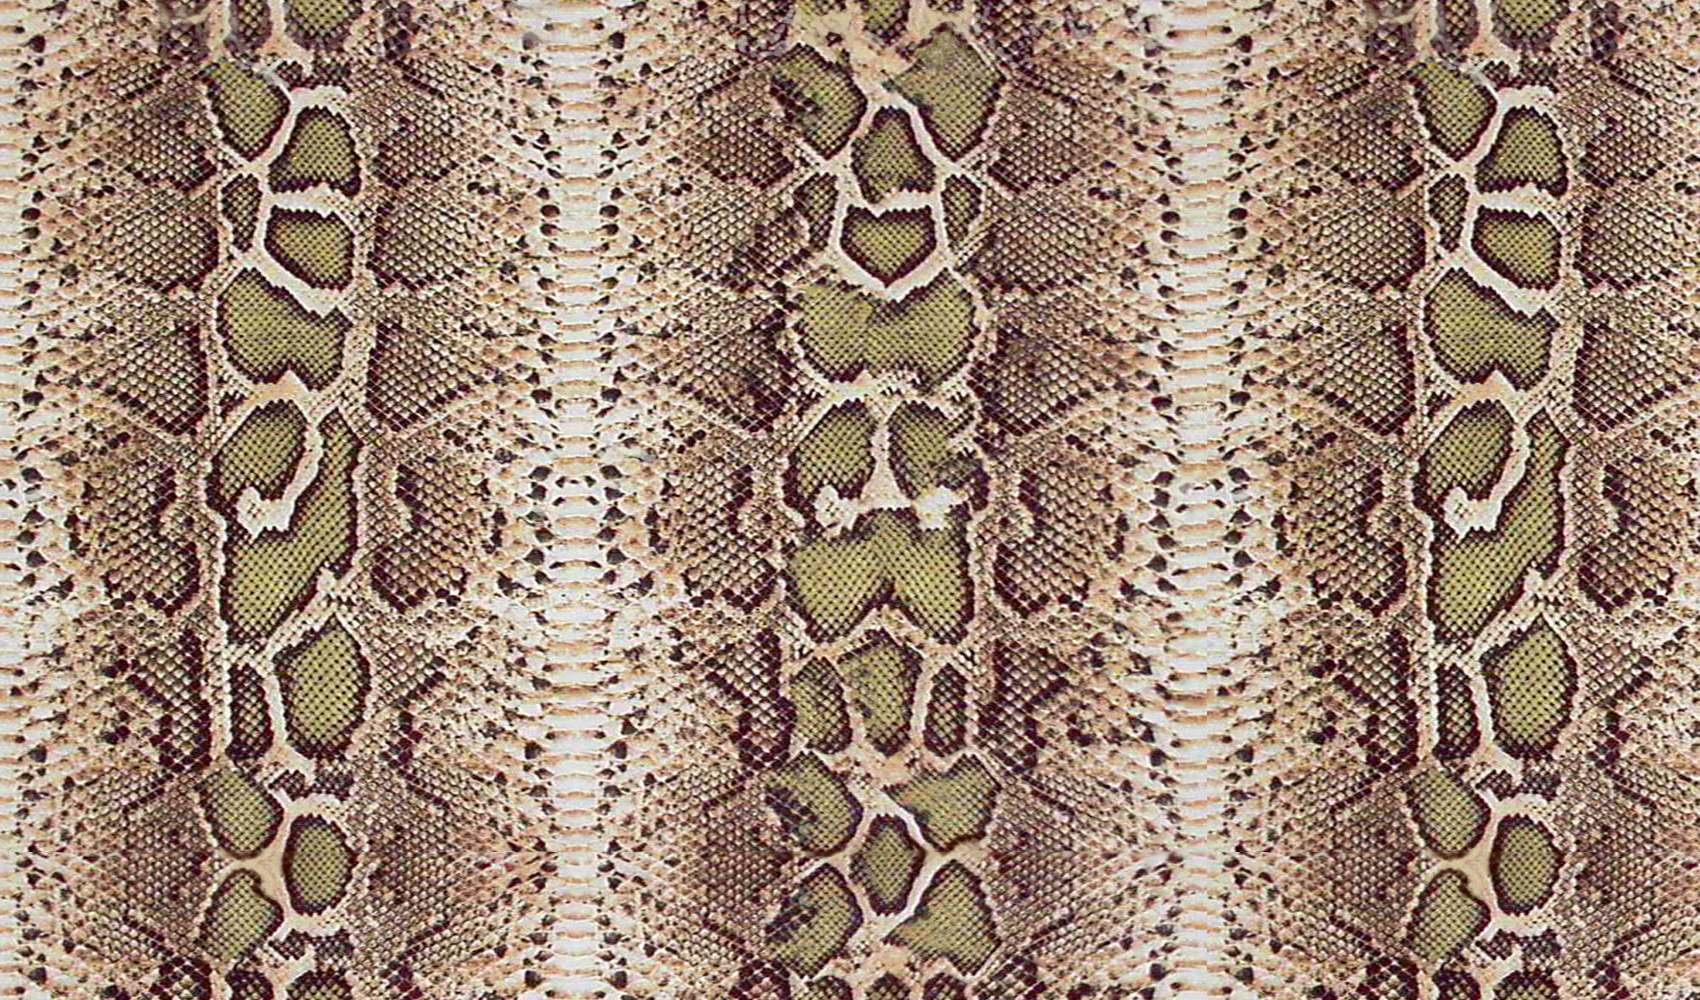 Snakeskin Print Wallpaper HD Widescreen